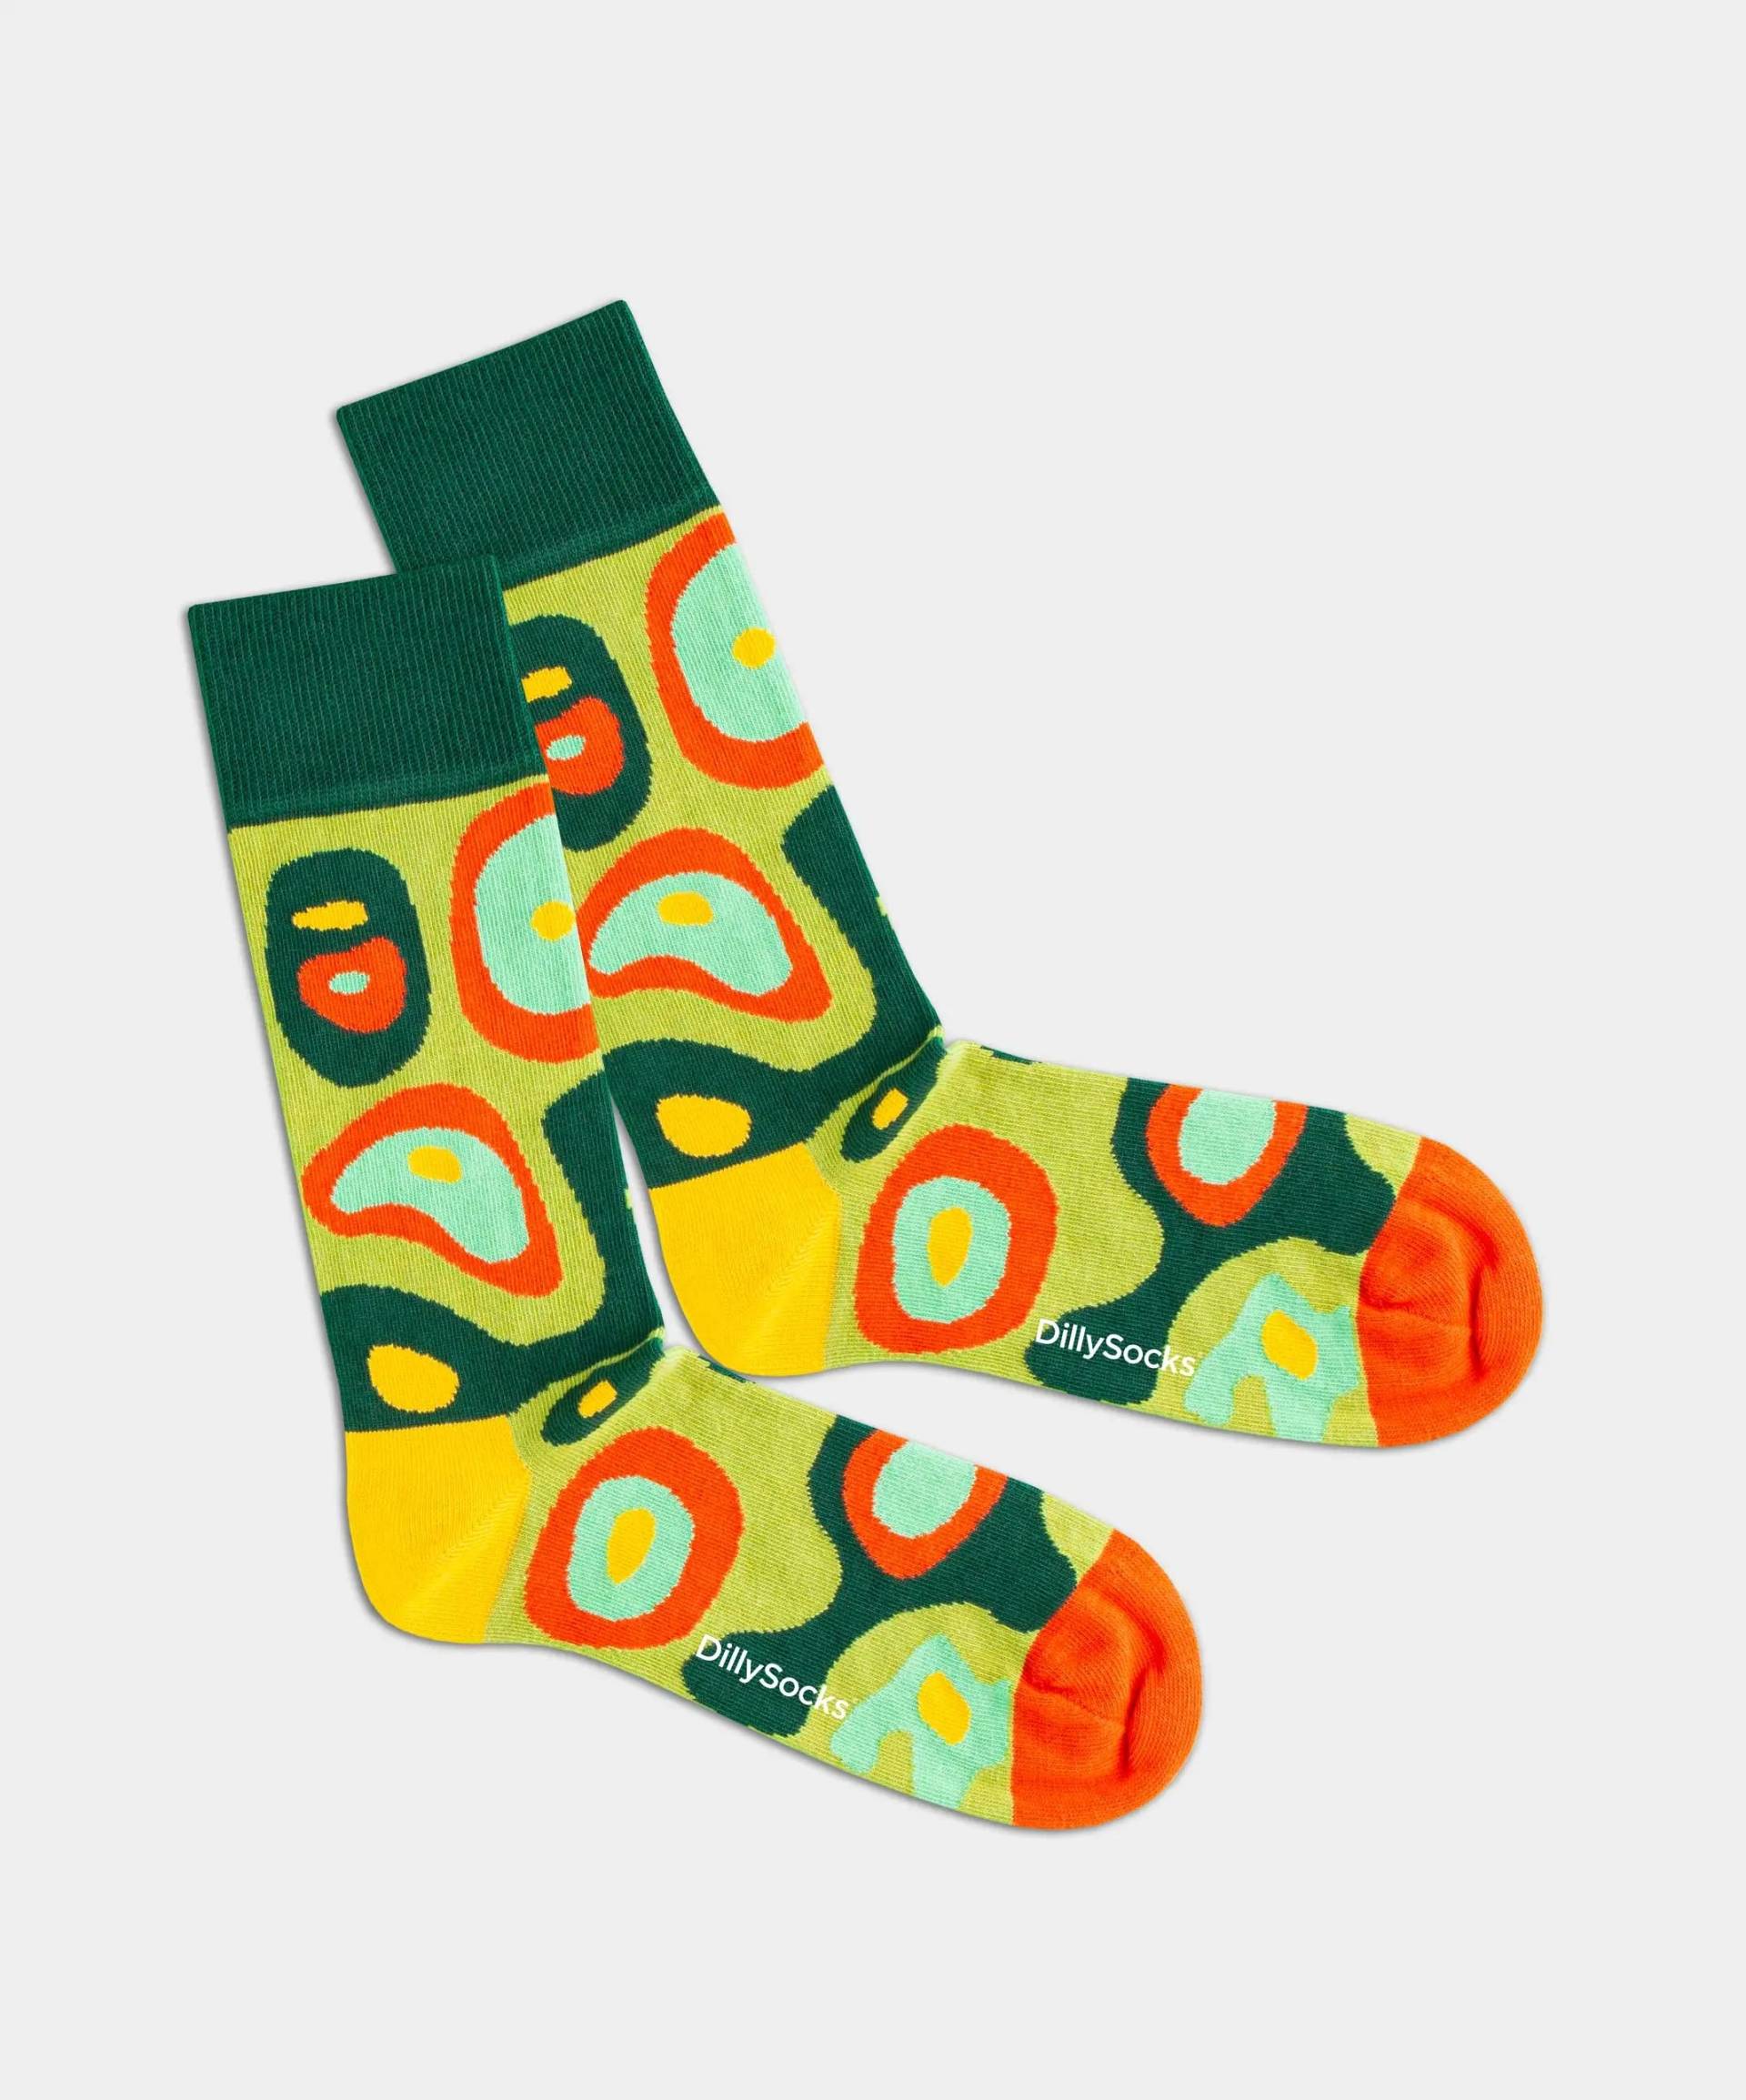 - Socken in Grün mit Camouflage Motiv/Muster von DillySocks